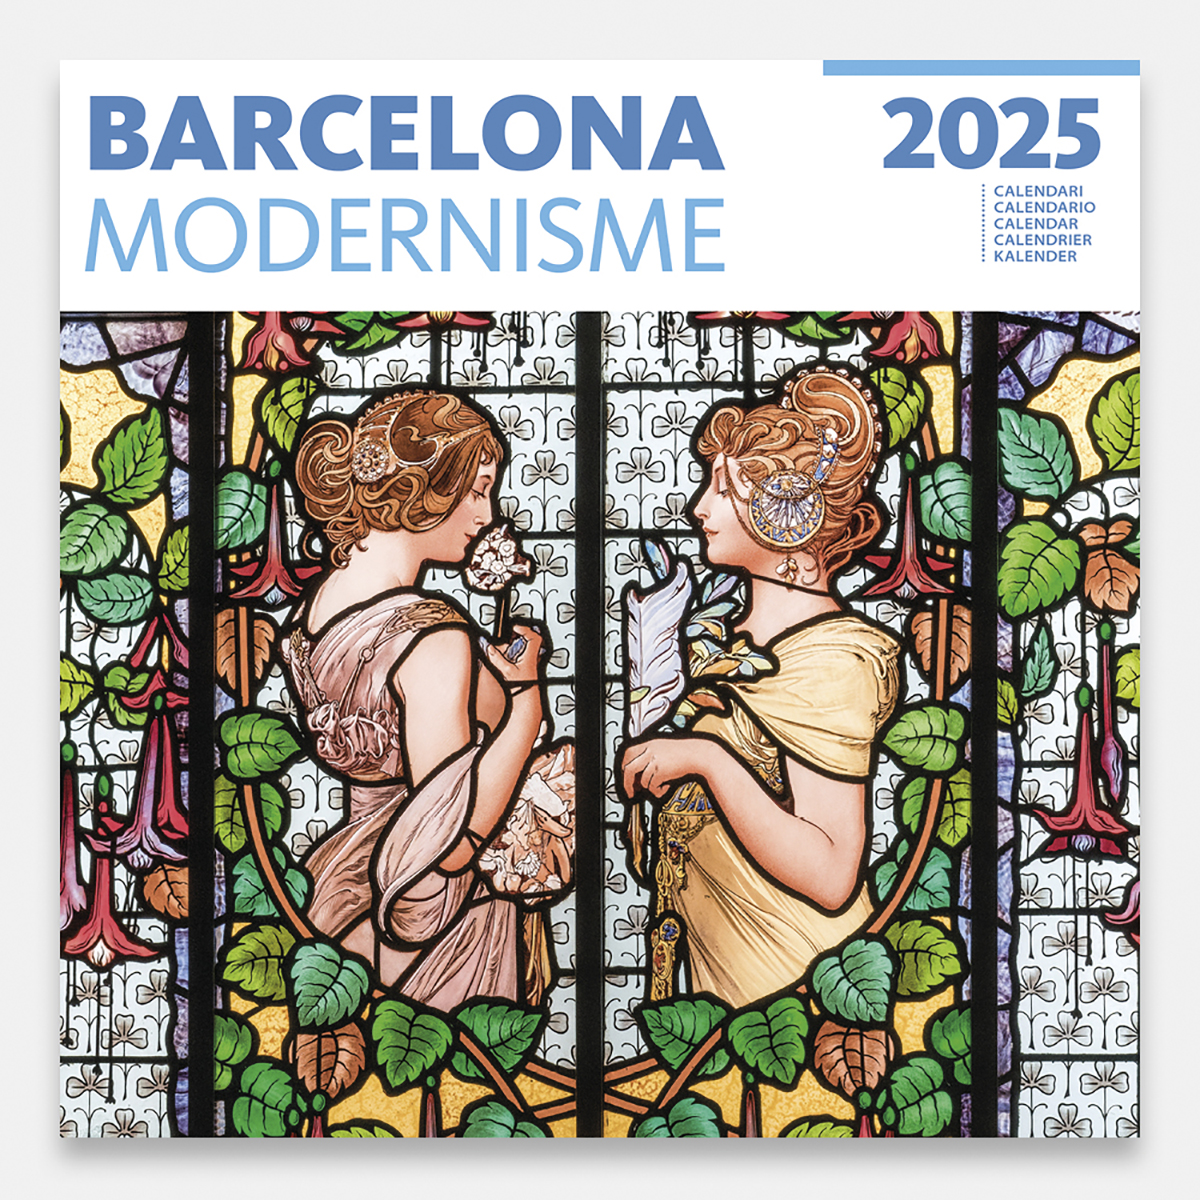 Calendrier 2025 Modernisme 25modg calendario pared 2025 barcelona modernismo modernisme